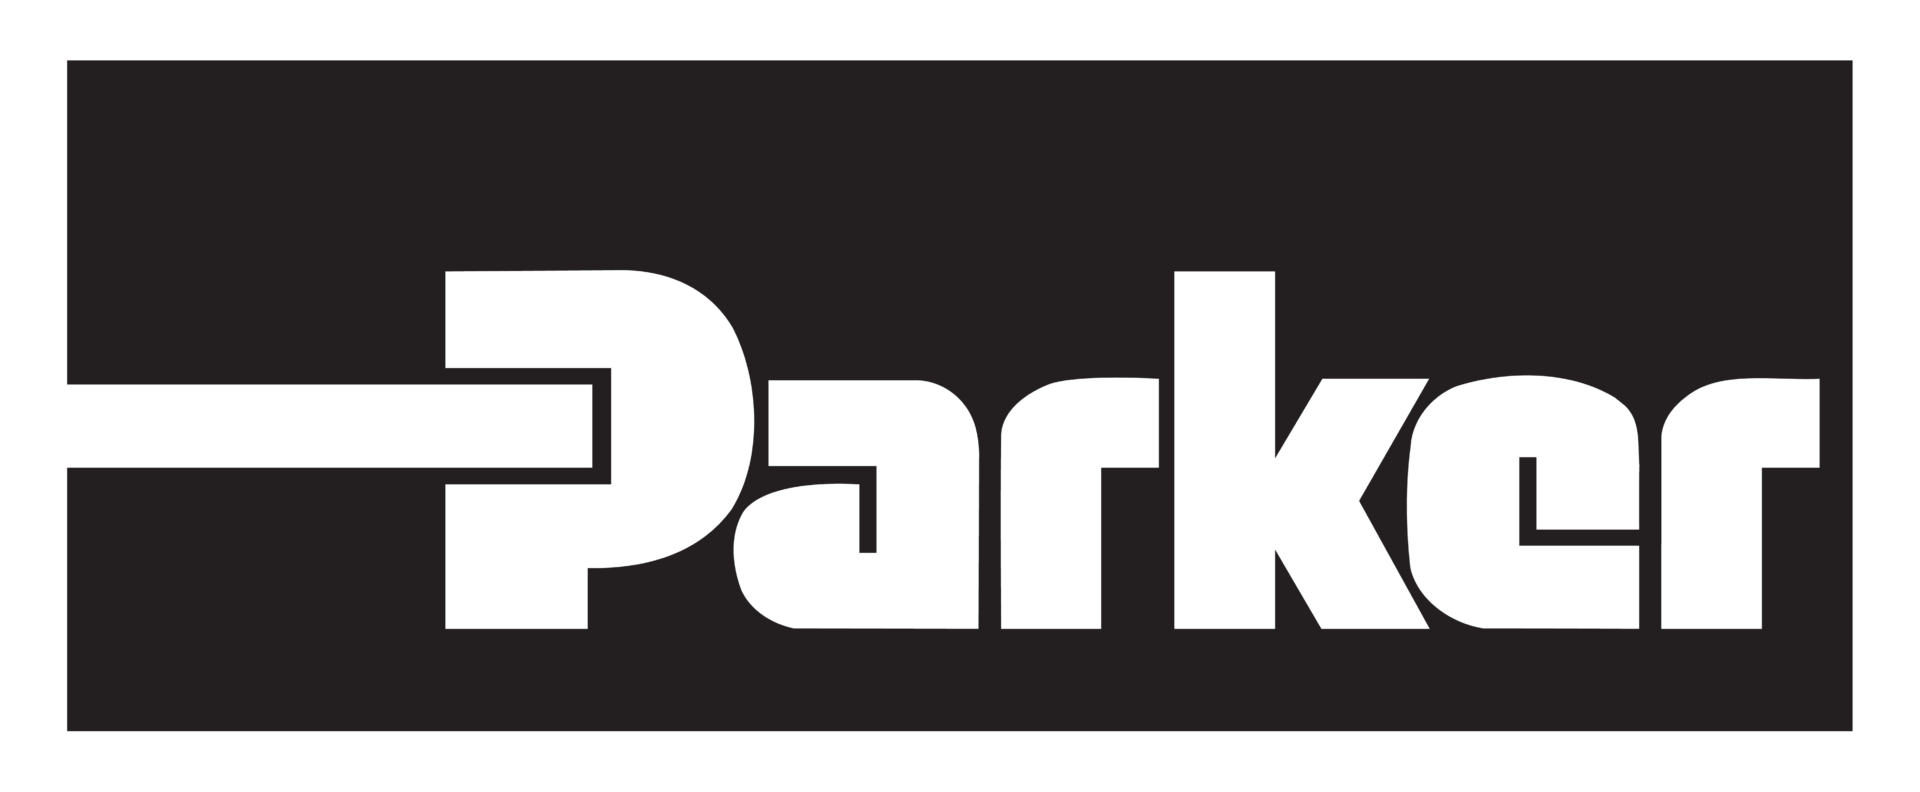 purepng.com parker hannifin logologobrand logoiconslogos 2515199387710dv6x - Our team